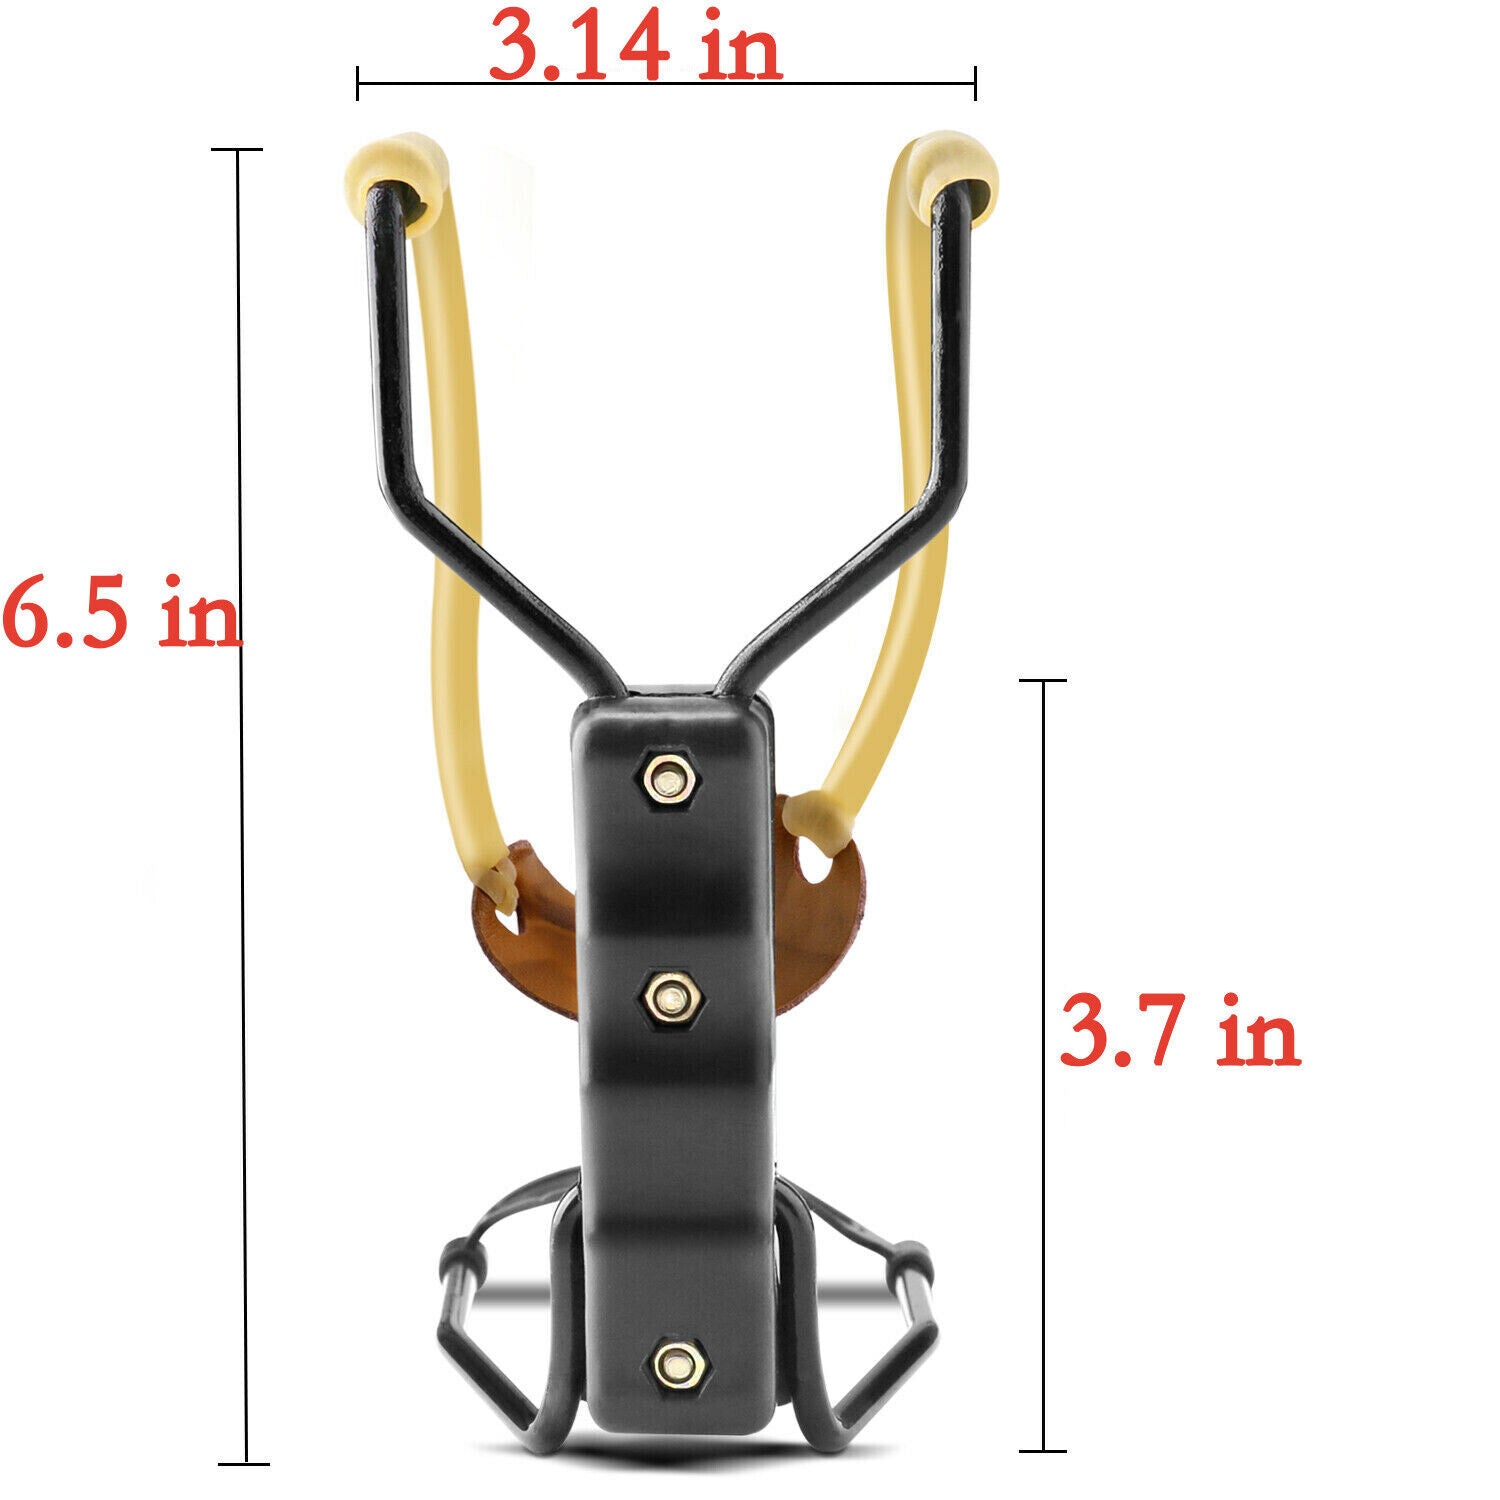 Compact Folding Slingshot Wrist Rocket Catapult For Hunting Outdoor Sport Games - Bargains4PenniesCompact Folding Slingshot Wrist Rocket Catapult For Hunting Outdoor Sport GamesBargains4Pennies